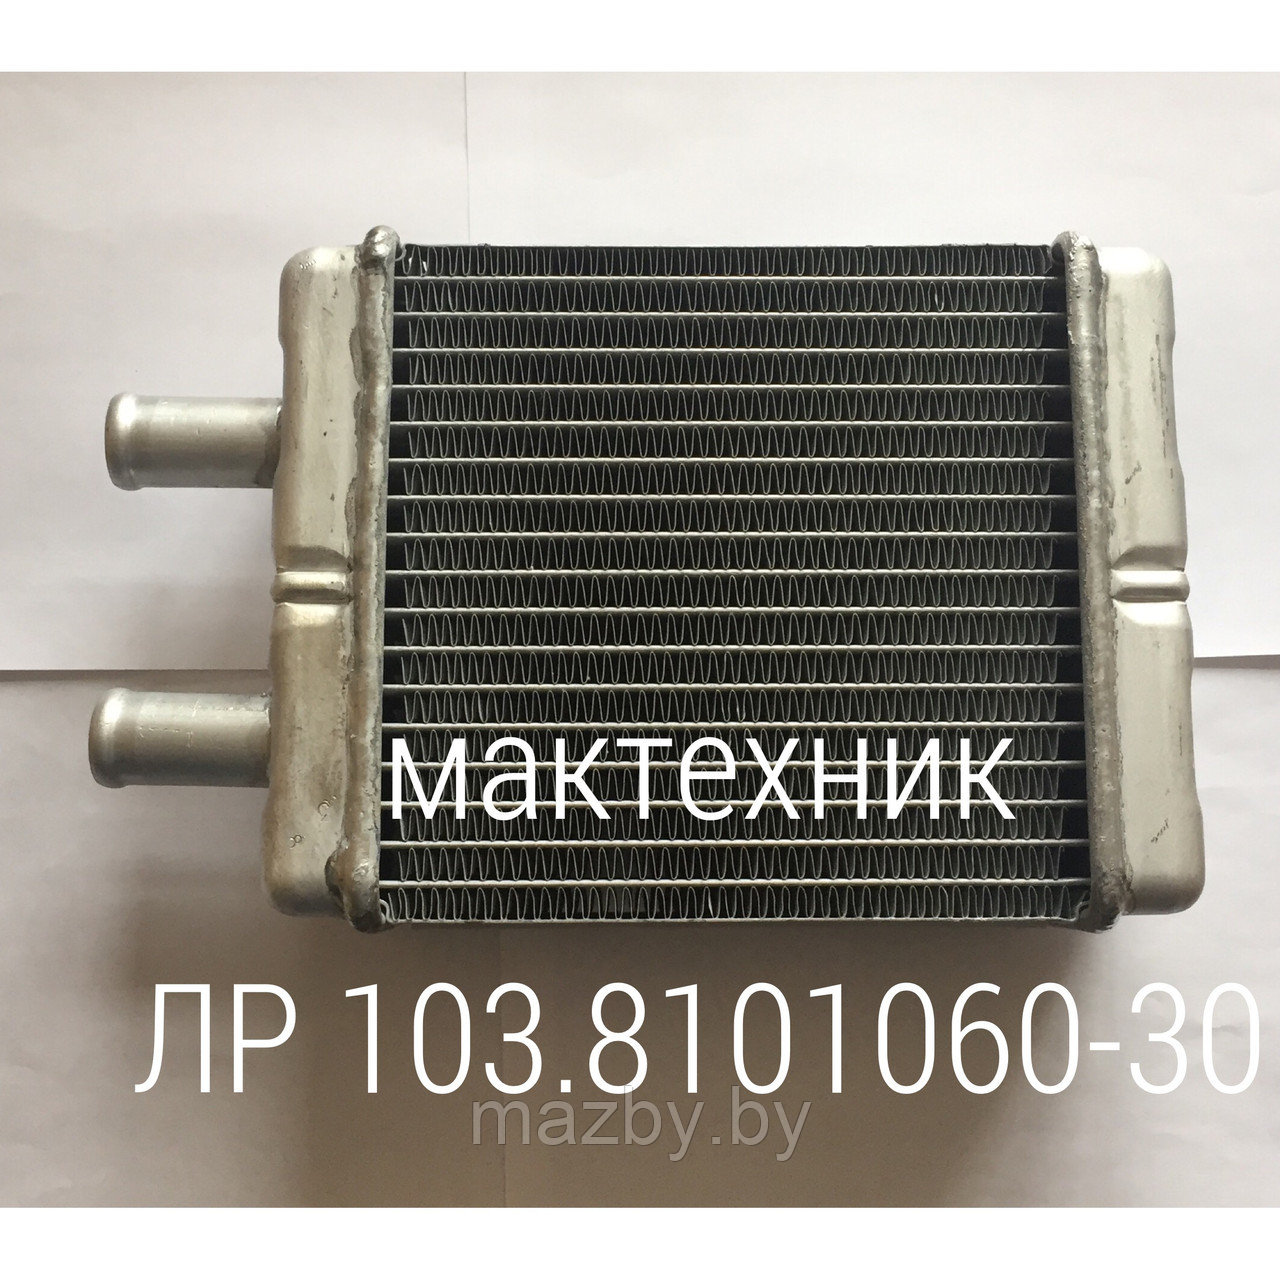 103С-8101060 радиатор отопителя автобус МАЗ  ( 103-8101060-30 )  А1-306.242.251